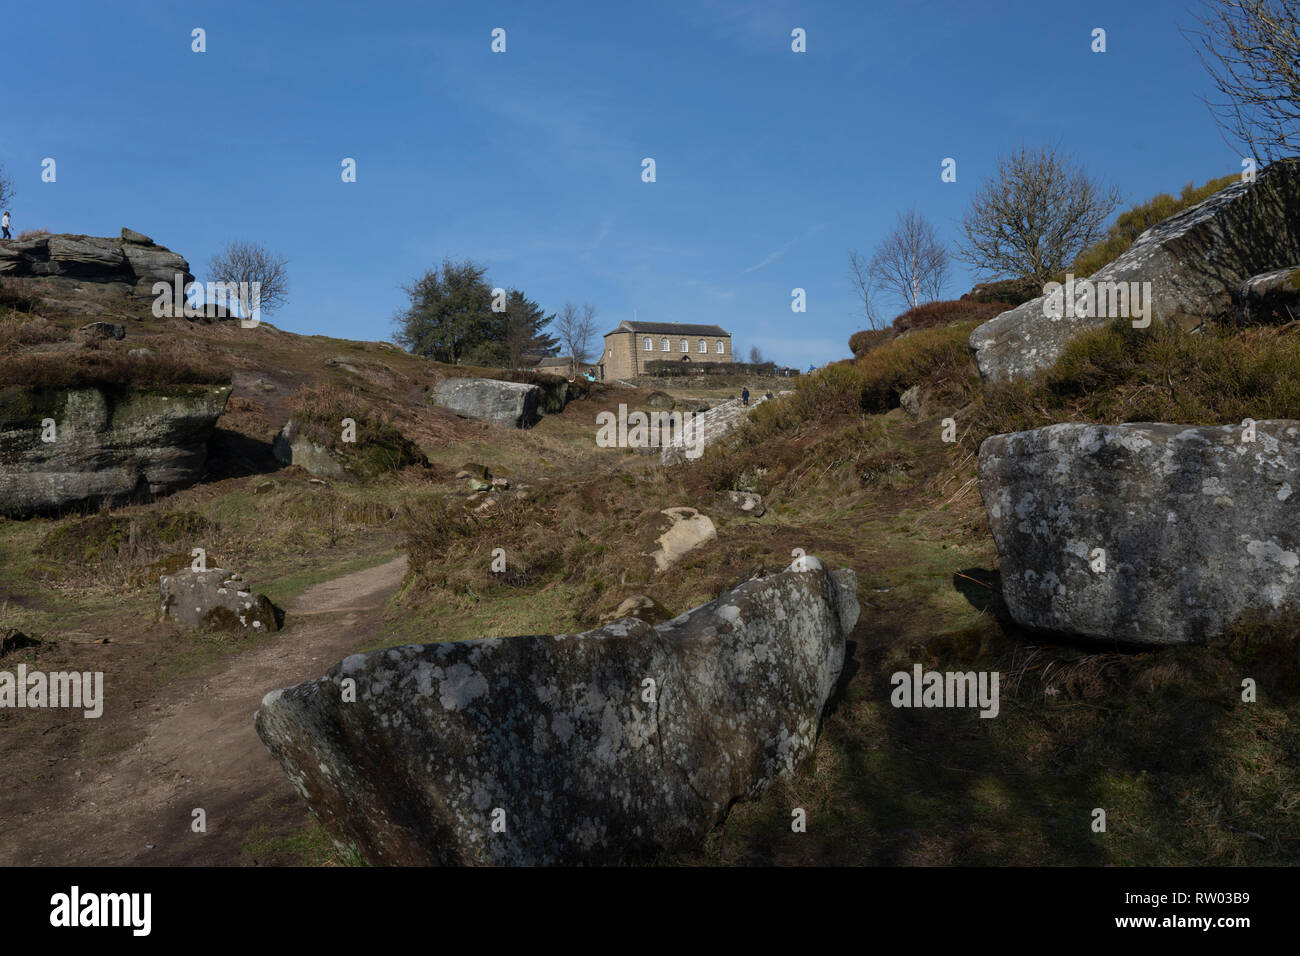 Formations rocheuses étonnantes avec centre d'accueil en arrière-plan, Brimham Rocks, Nidfoot, North Yorkshire, Angleterre, ROYAUME-UNI. Banque D'Images